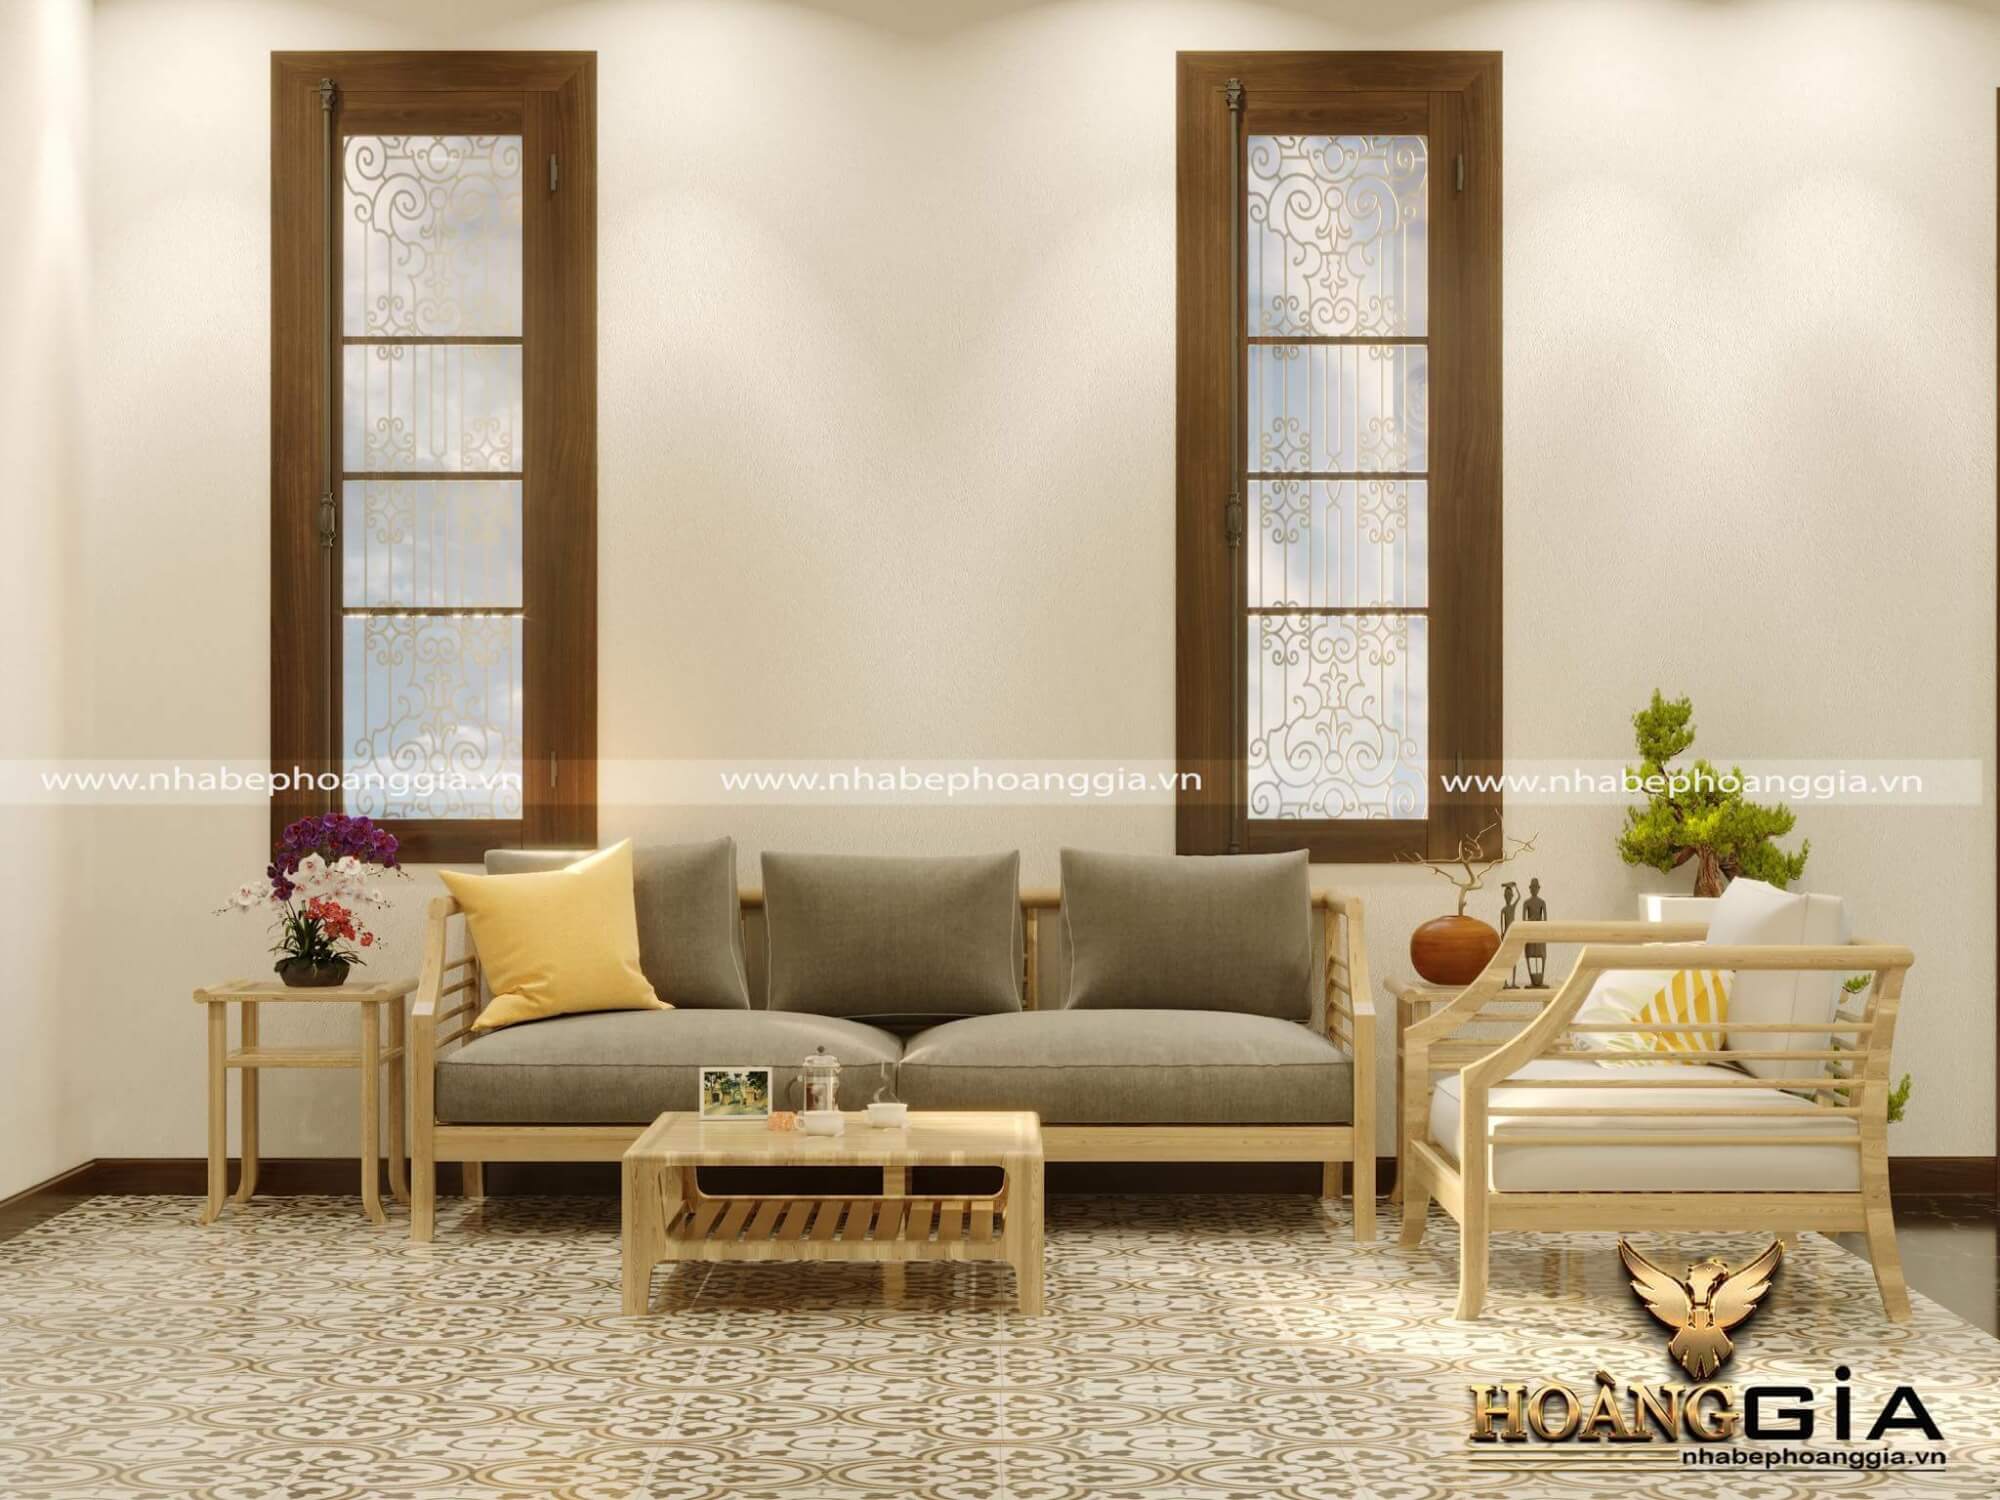 Trang trí phòng khách đón Tết Canh Tý 2020 bằng việc trang trí cửa kính